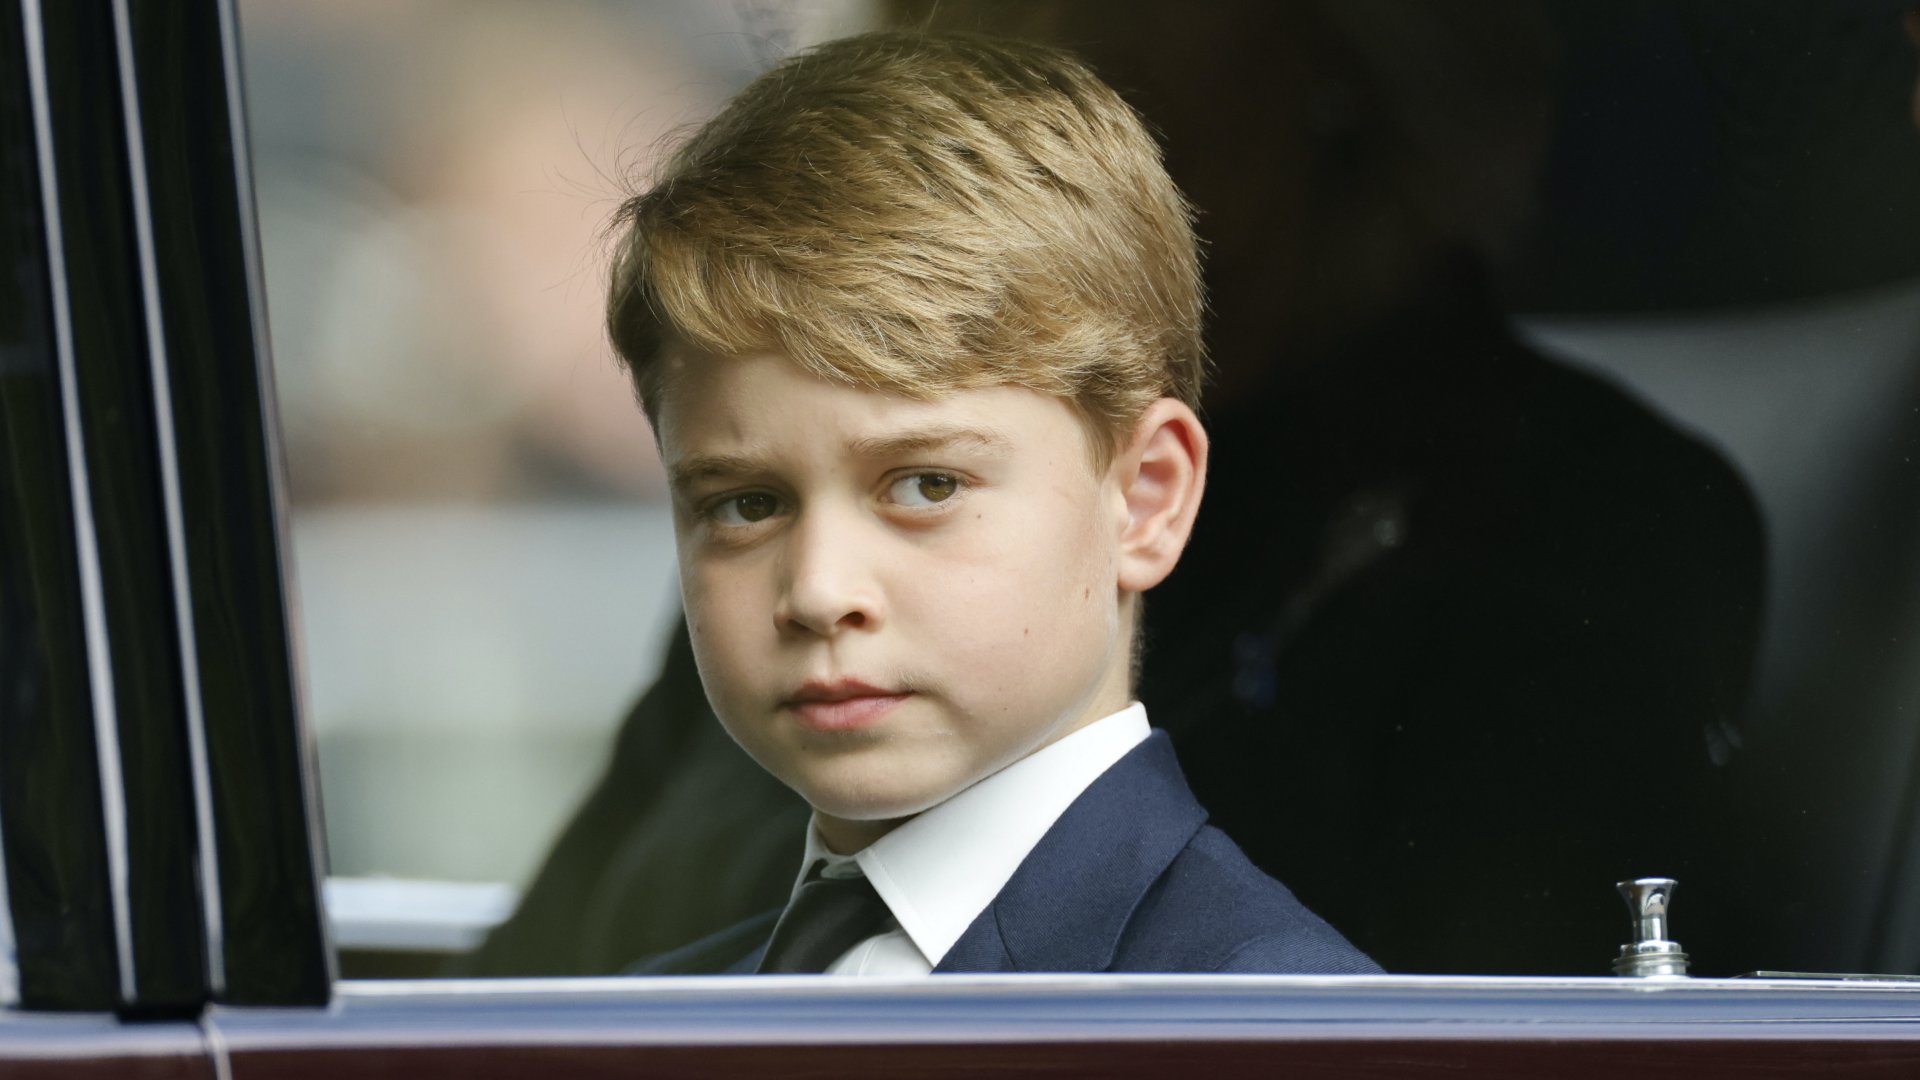 György herceg, Vilmos cambridge-i herceg, a brit trónörökös és felesége, Katalin cambridge-i hercegnõ elsõszülött fia a dédanyja, II. Erzsébet néhai brit uralkodó temetésén Londonban 2022. szeptember 19-én